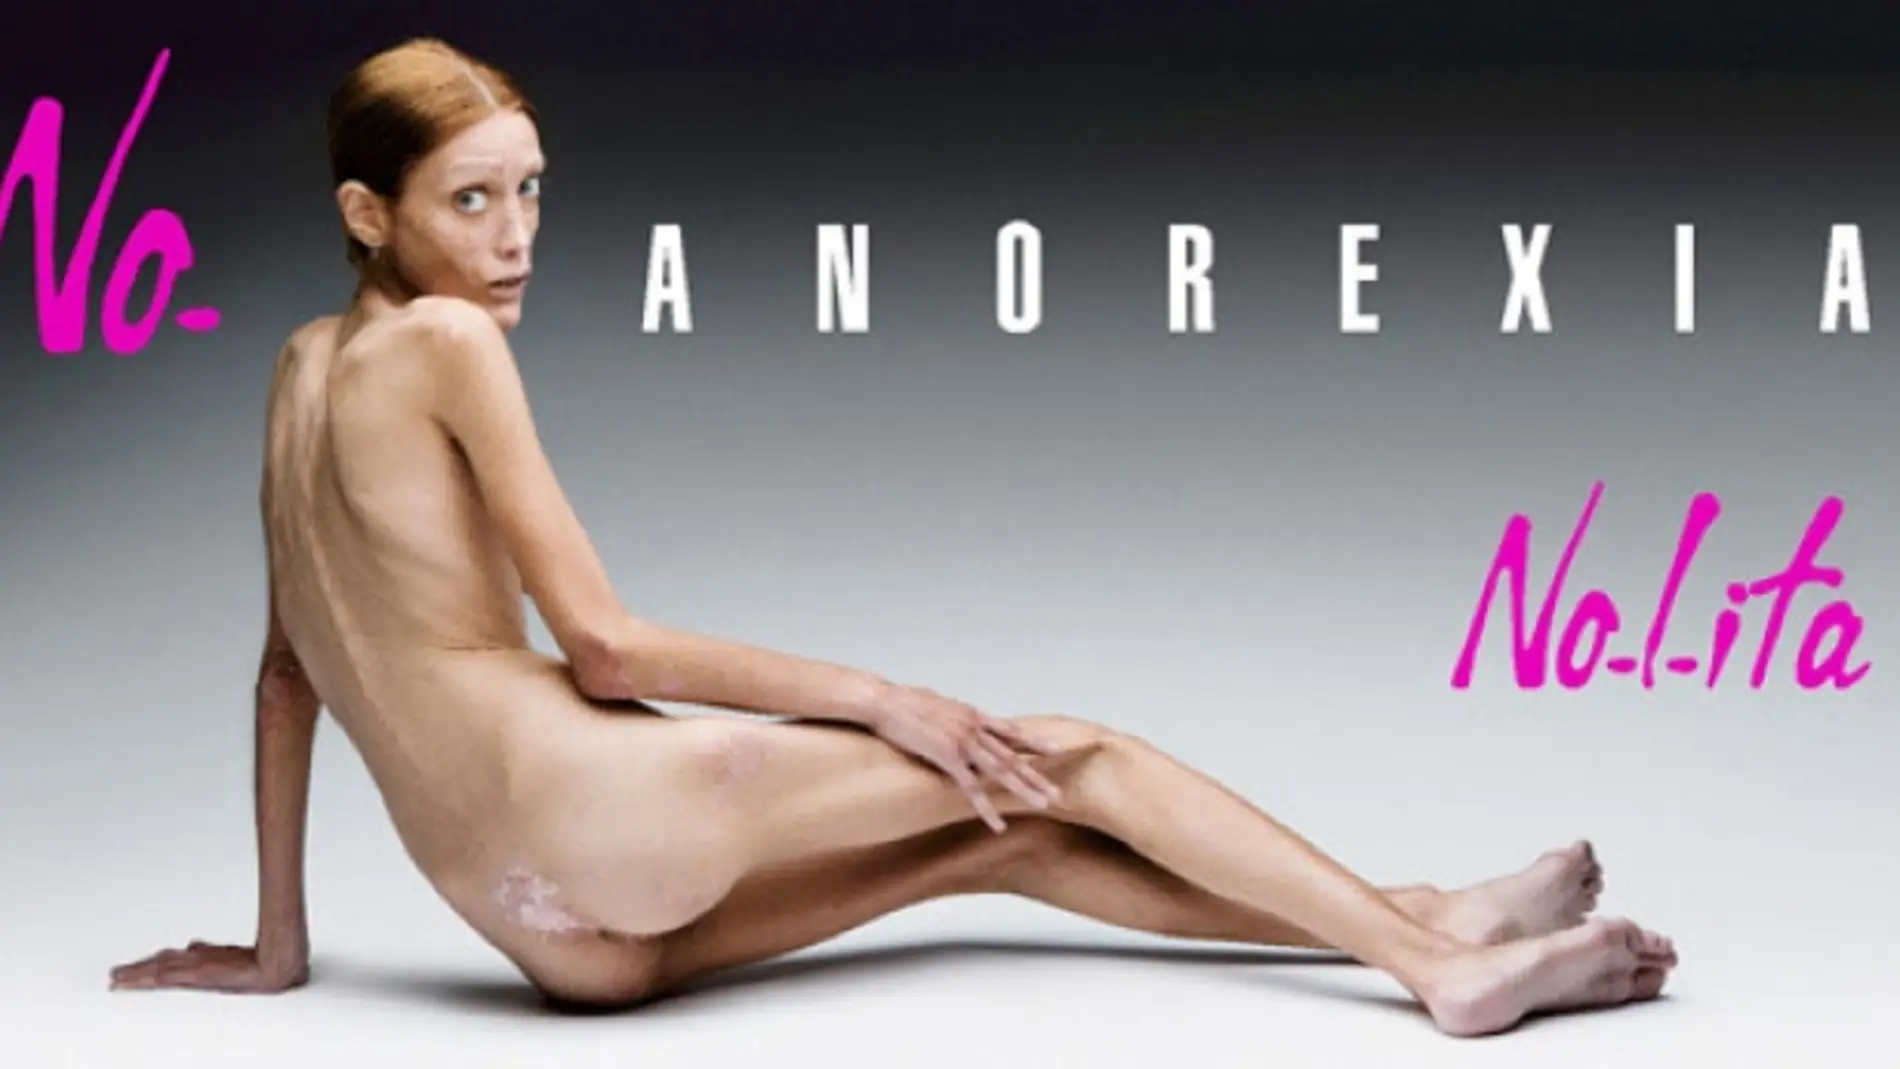  Isabelle Caro, la modelo francesa famosa por su anorexia y que murió en 2010